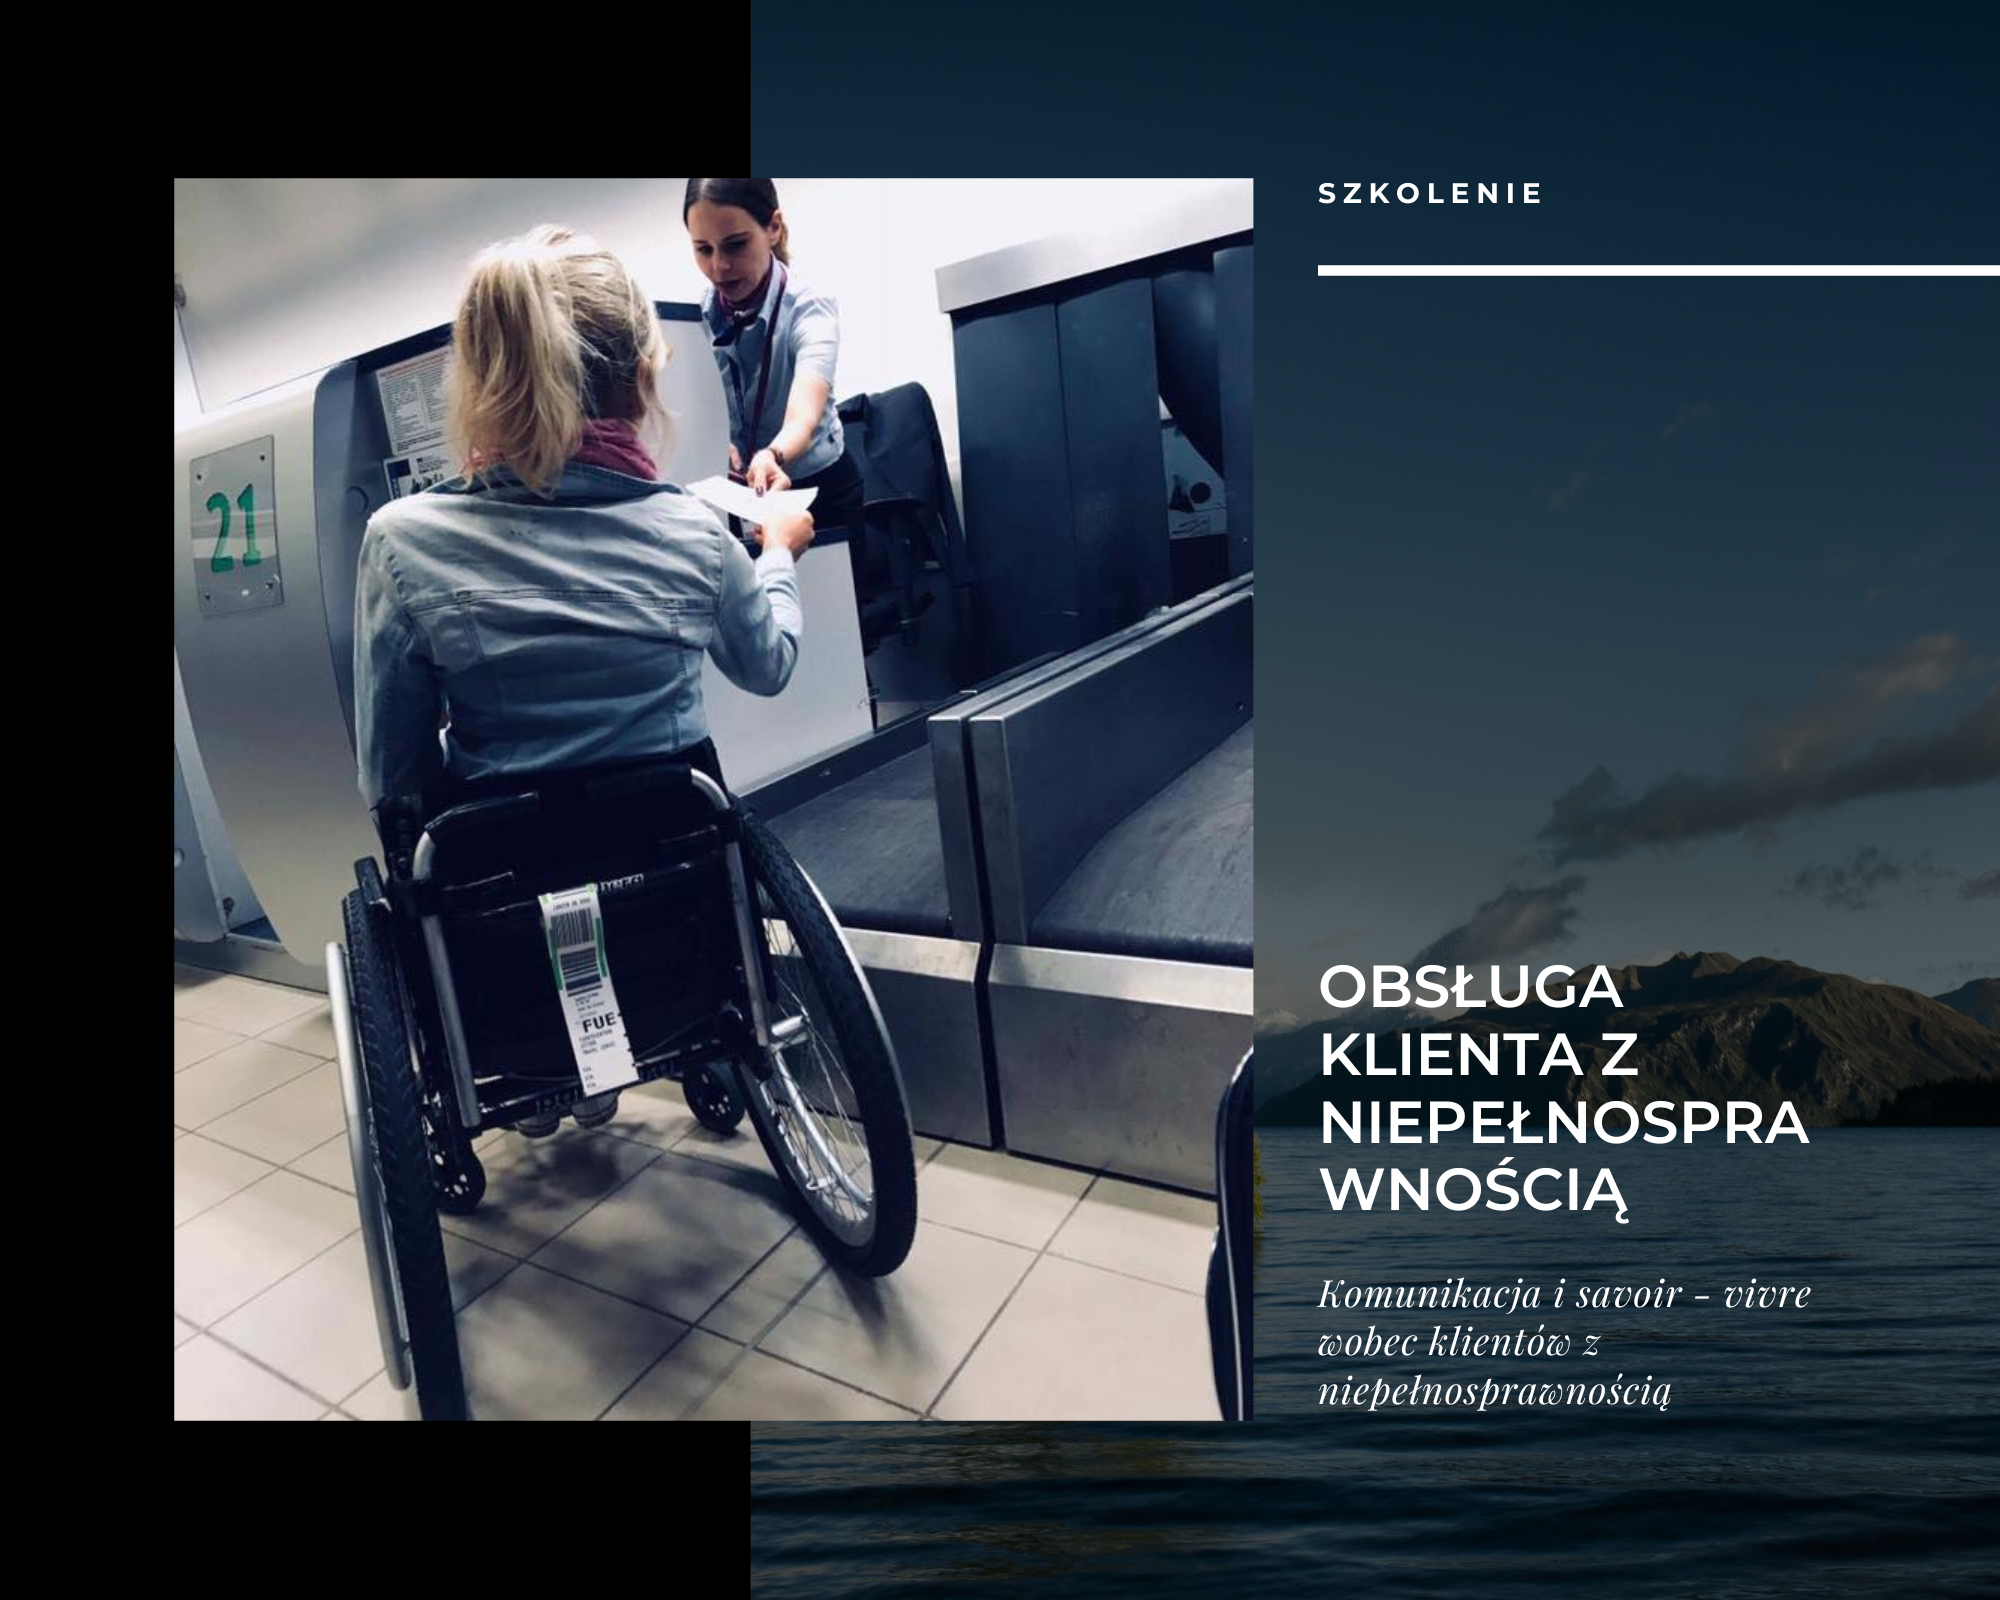 dziewczyna poruszająca się na wózku odbiera bilet lotniczy od pracownicy lotniska. Grafika szkolenia.